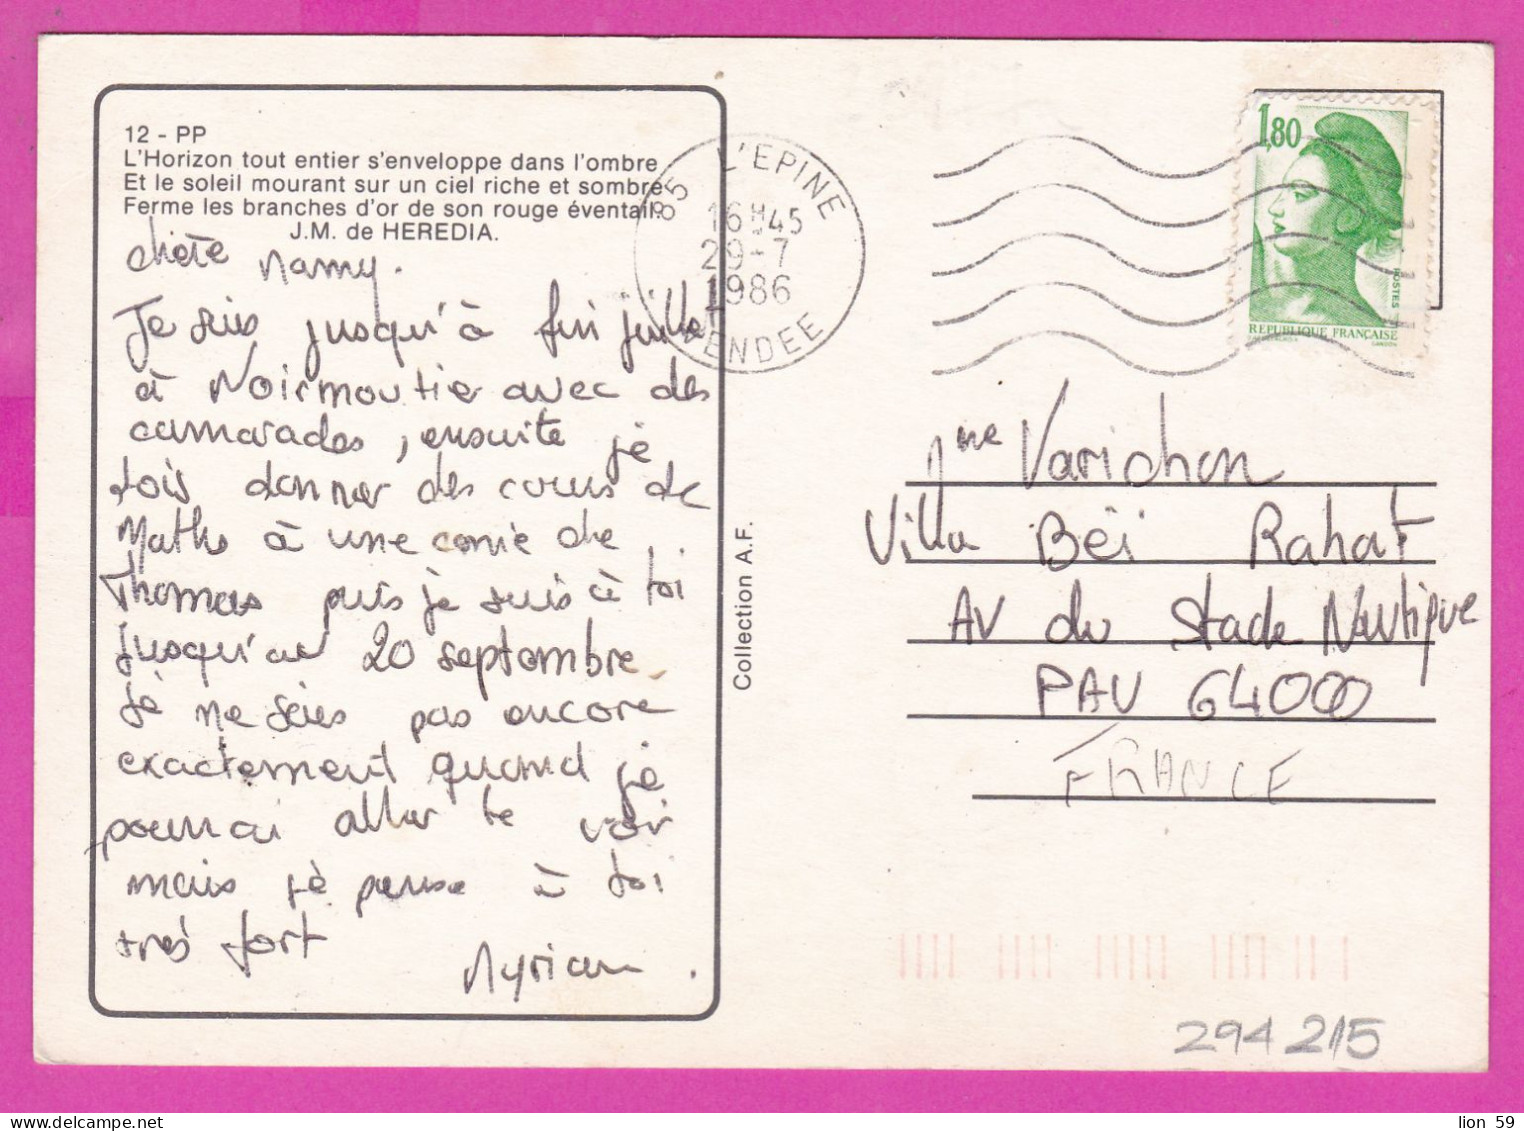 294215 / France - L'Horizon Tout Entier S'enveloppe Dans L'ombre Poem PC 1986 L'Epine USED 1.80 Fr. Liberty Of Gandon , - 1982-1990 Liberté (Gandon)